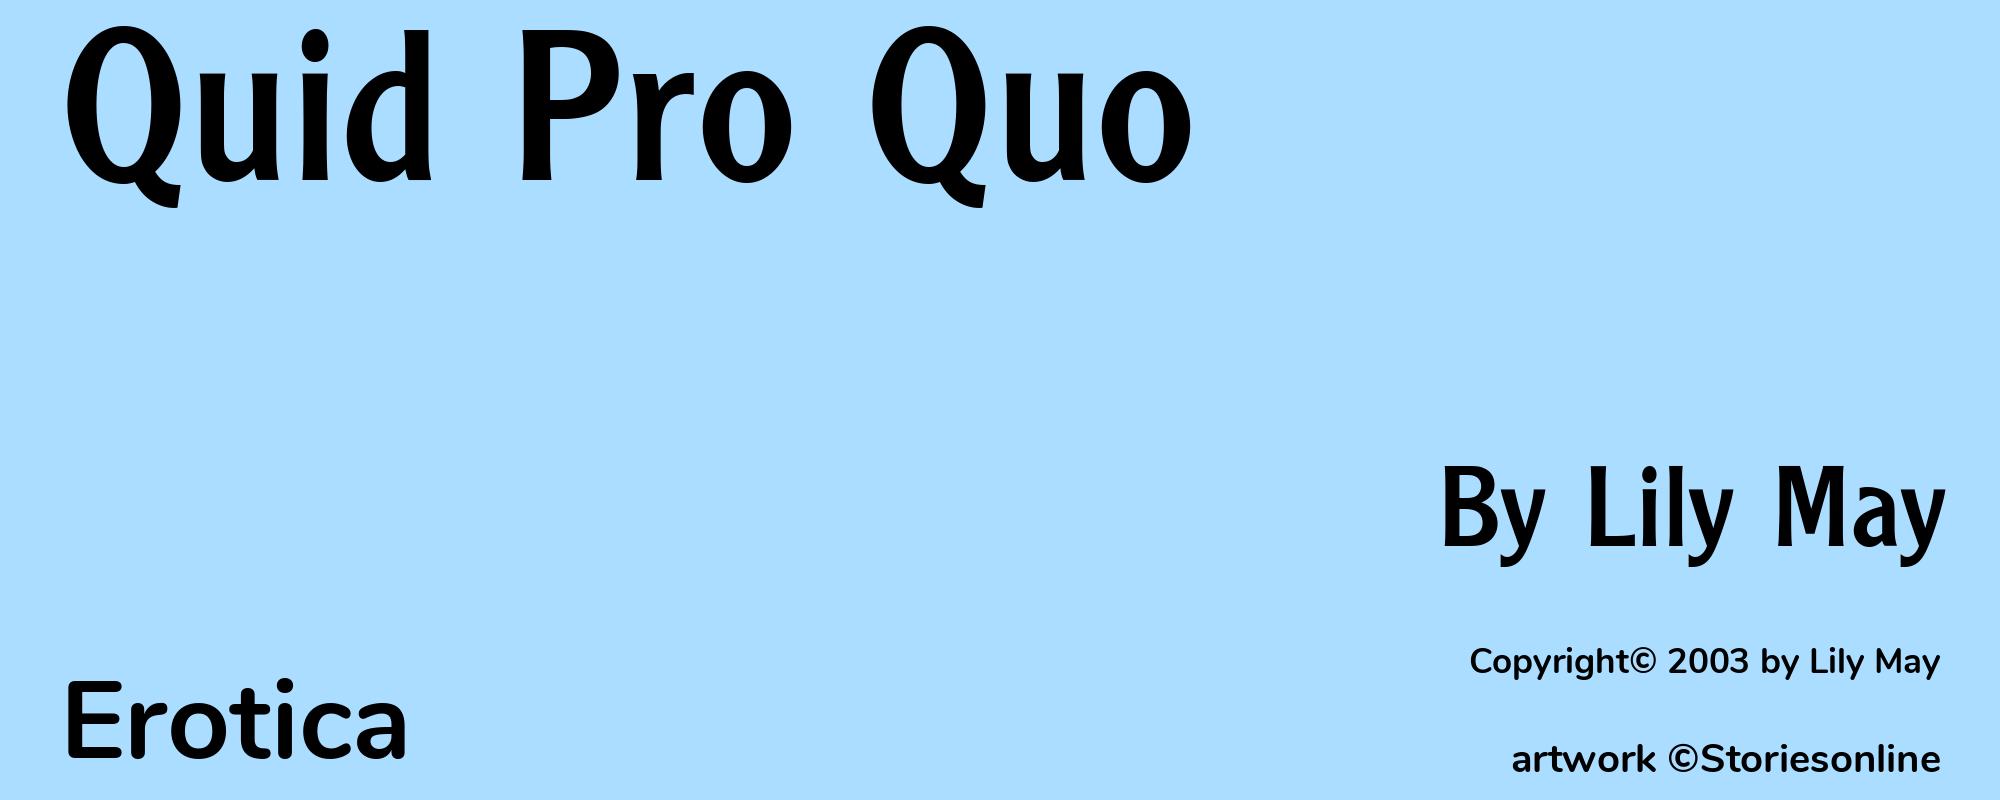 Quid Pro Quo - Cover